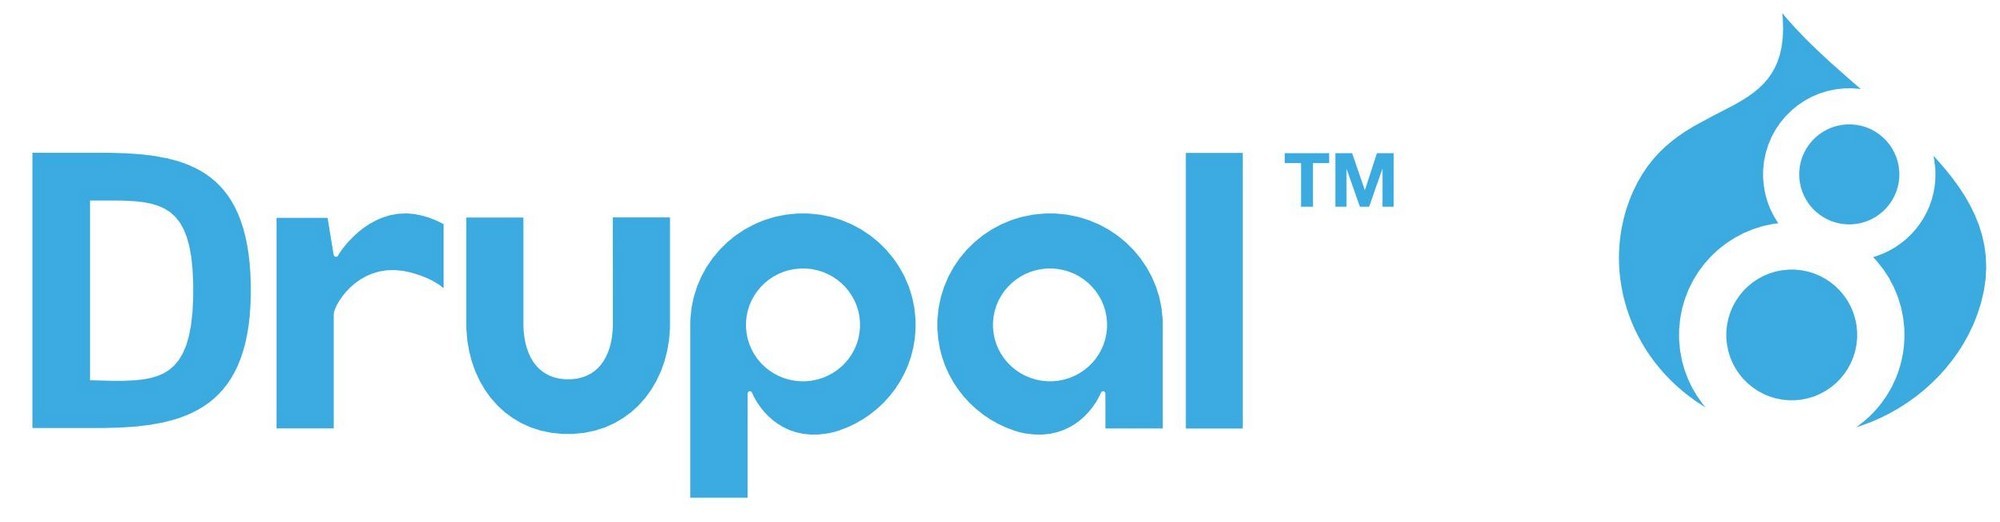 Drupal Logo png